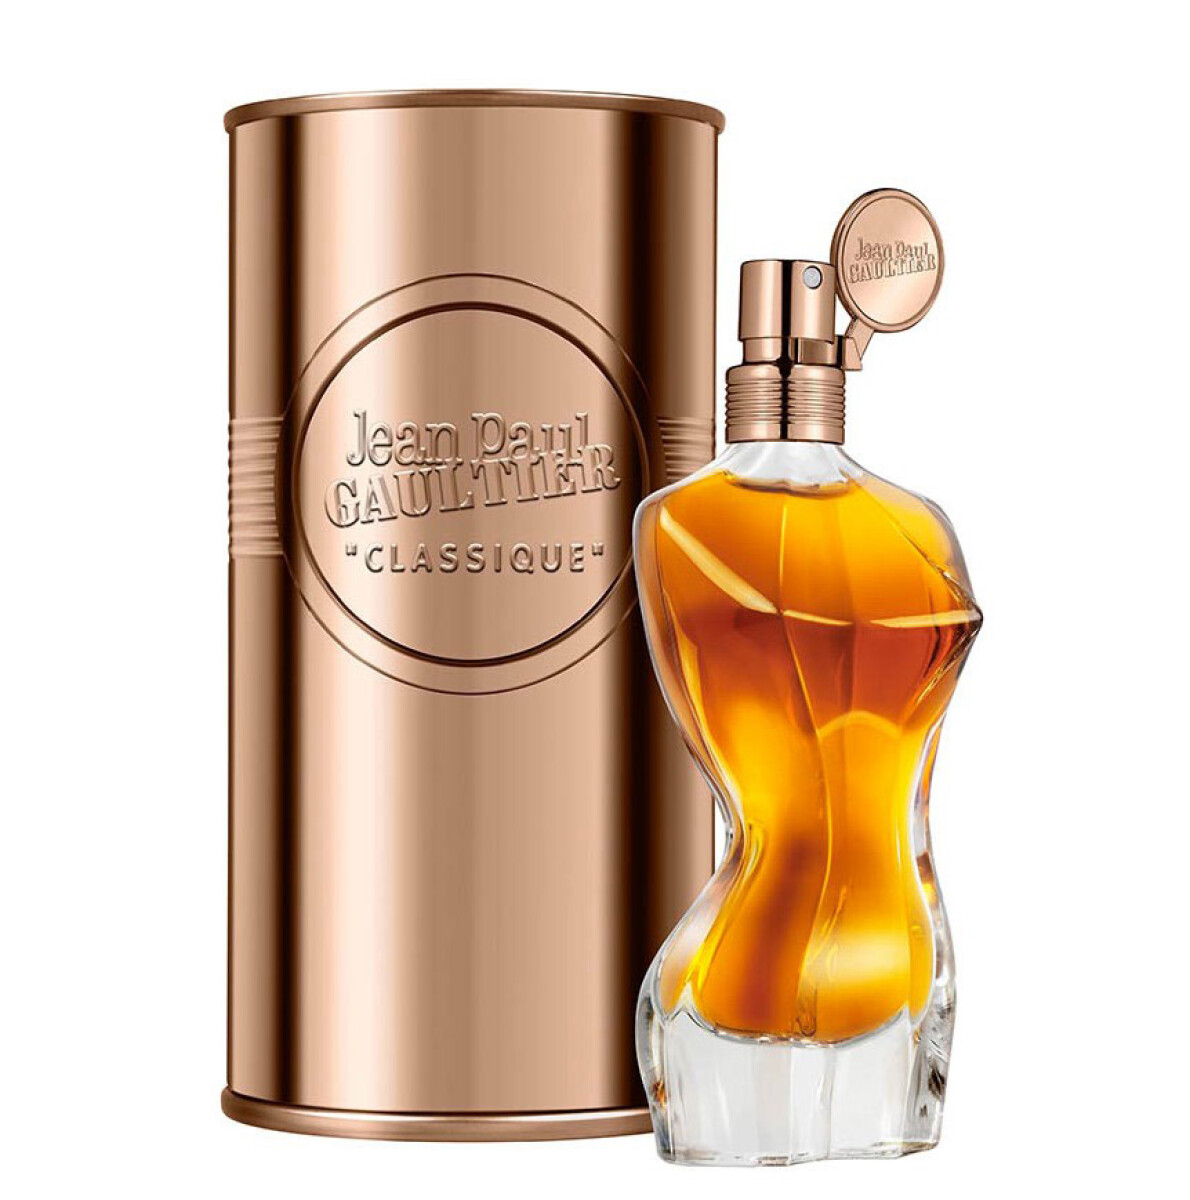 Perfume Jean Paul Gaultier Classique Edp 100 ml 